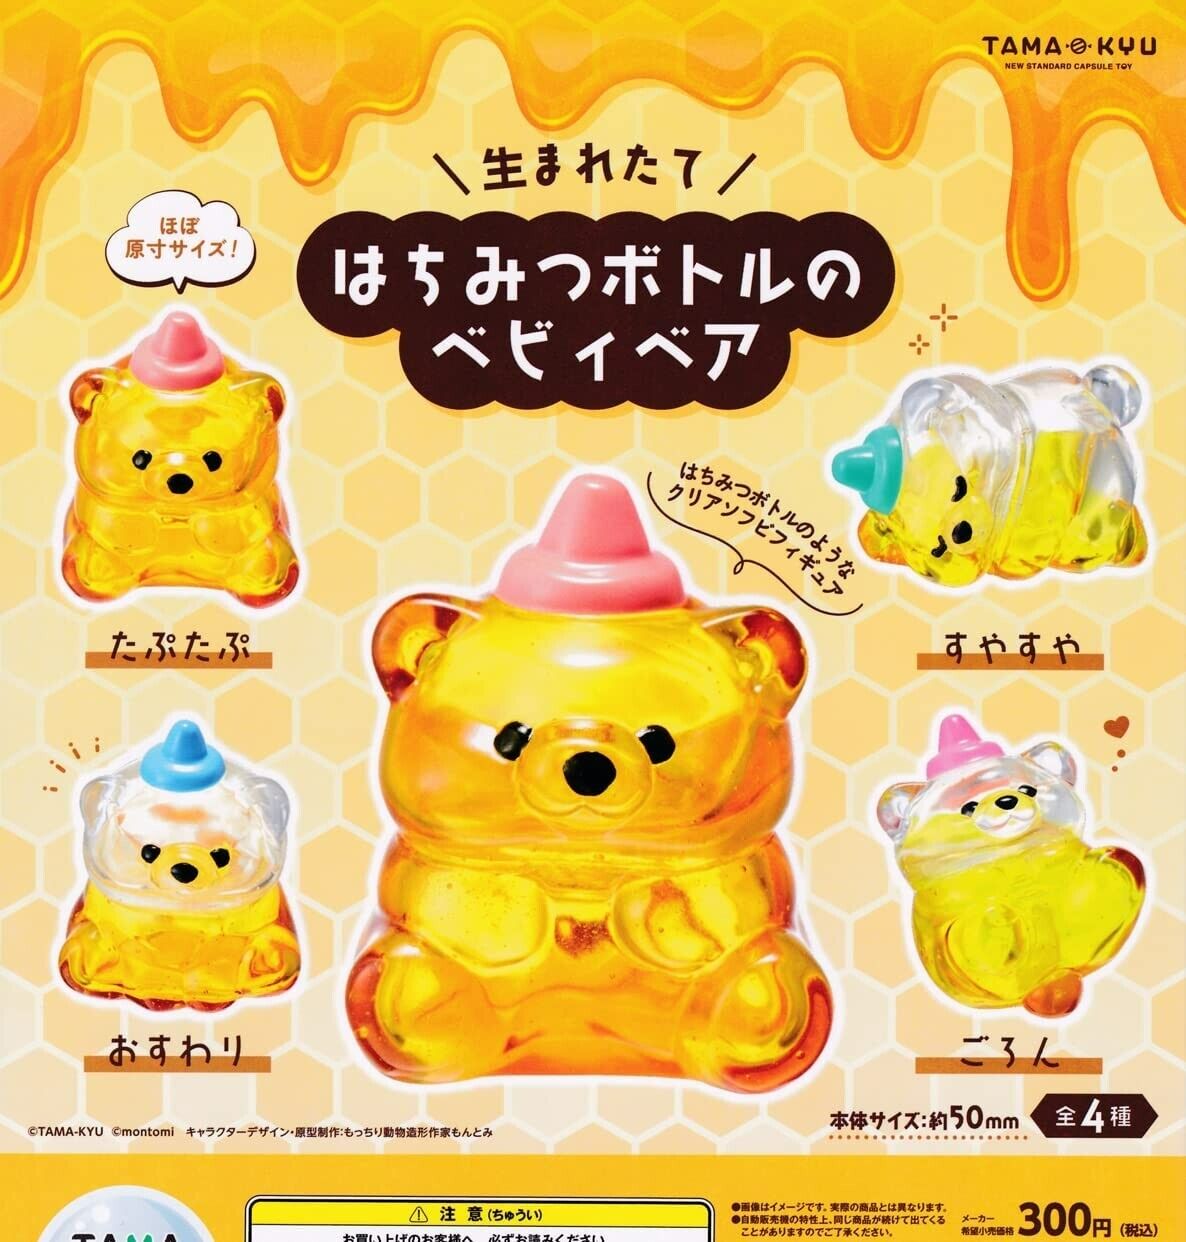 TAMA-KYU Baby Bear of Honey Bottle Complete Set of 4 Figures Capsule Toys Japan